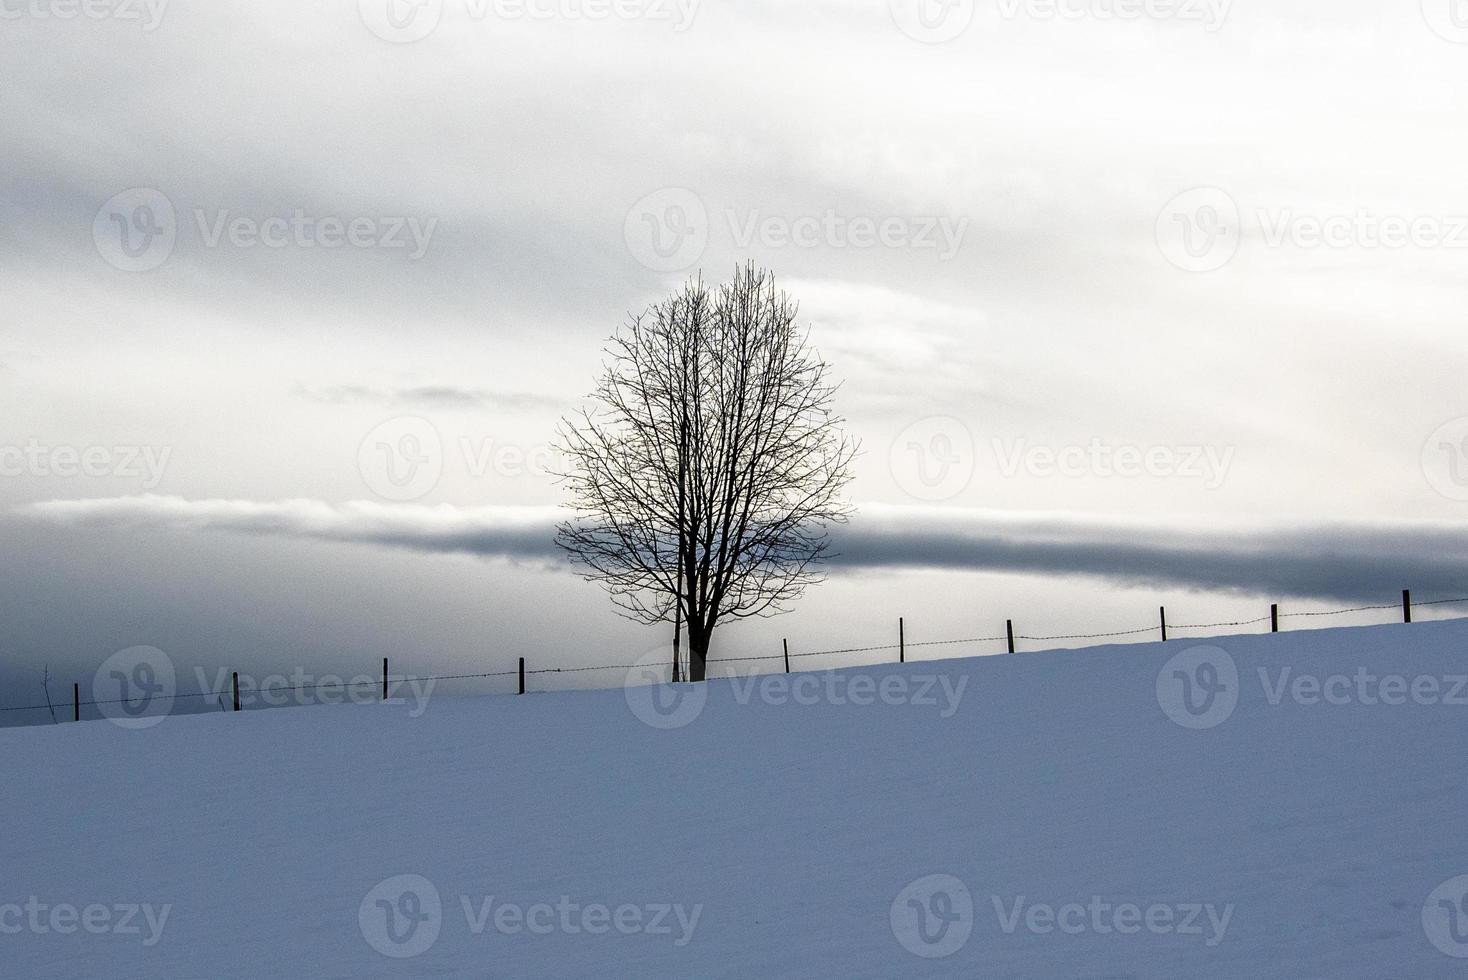 einsamer Baum im Schnee zwei foto